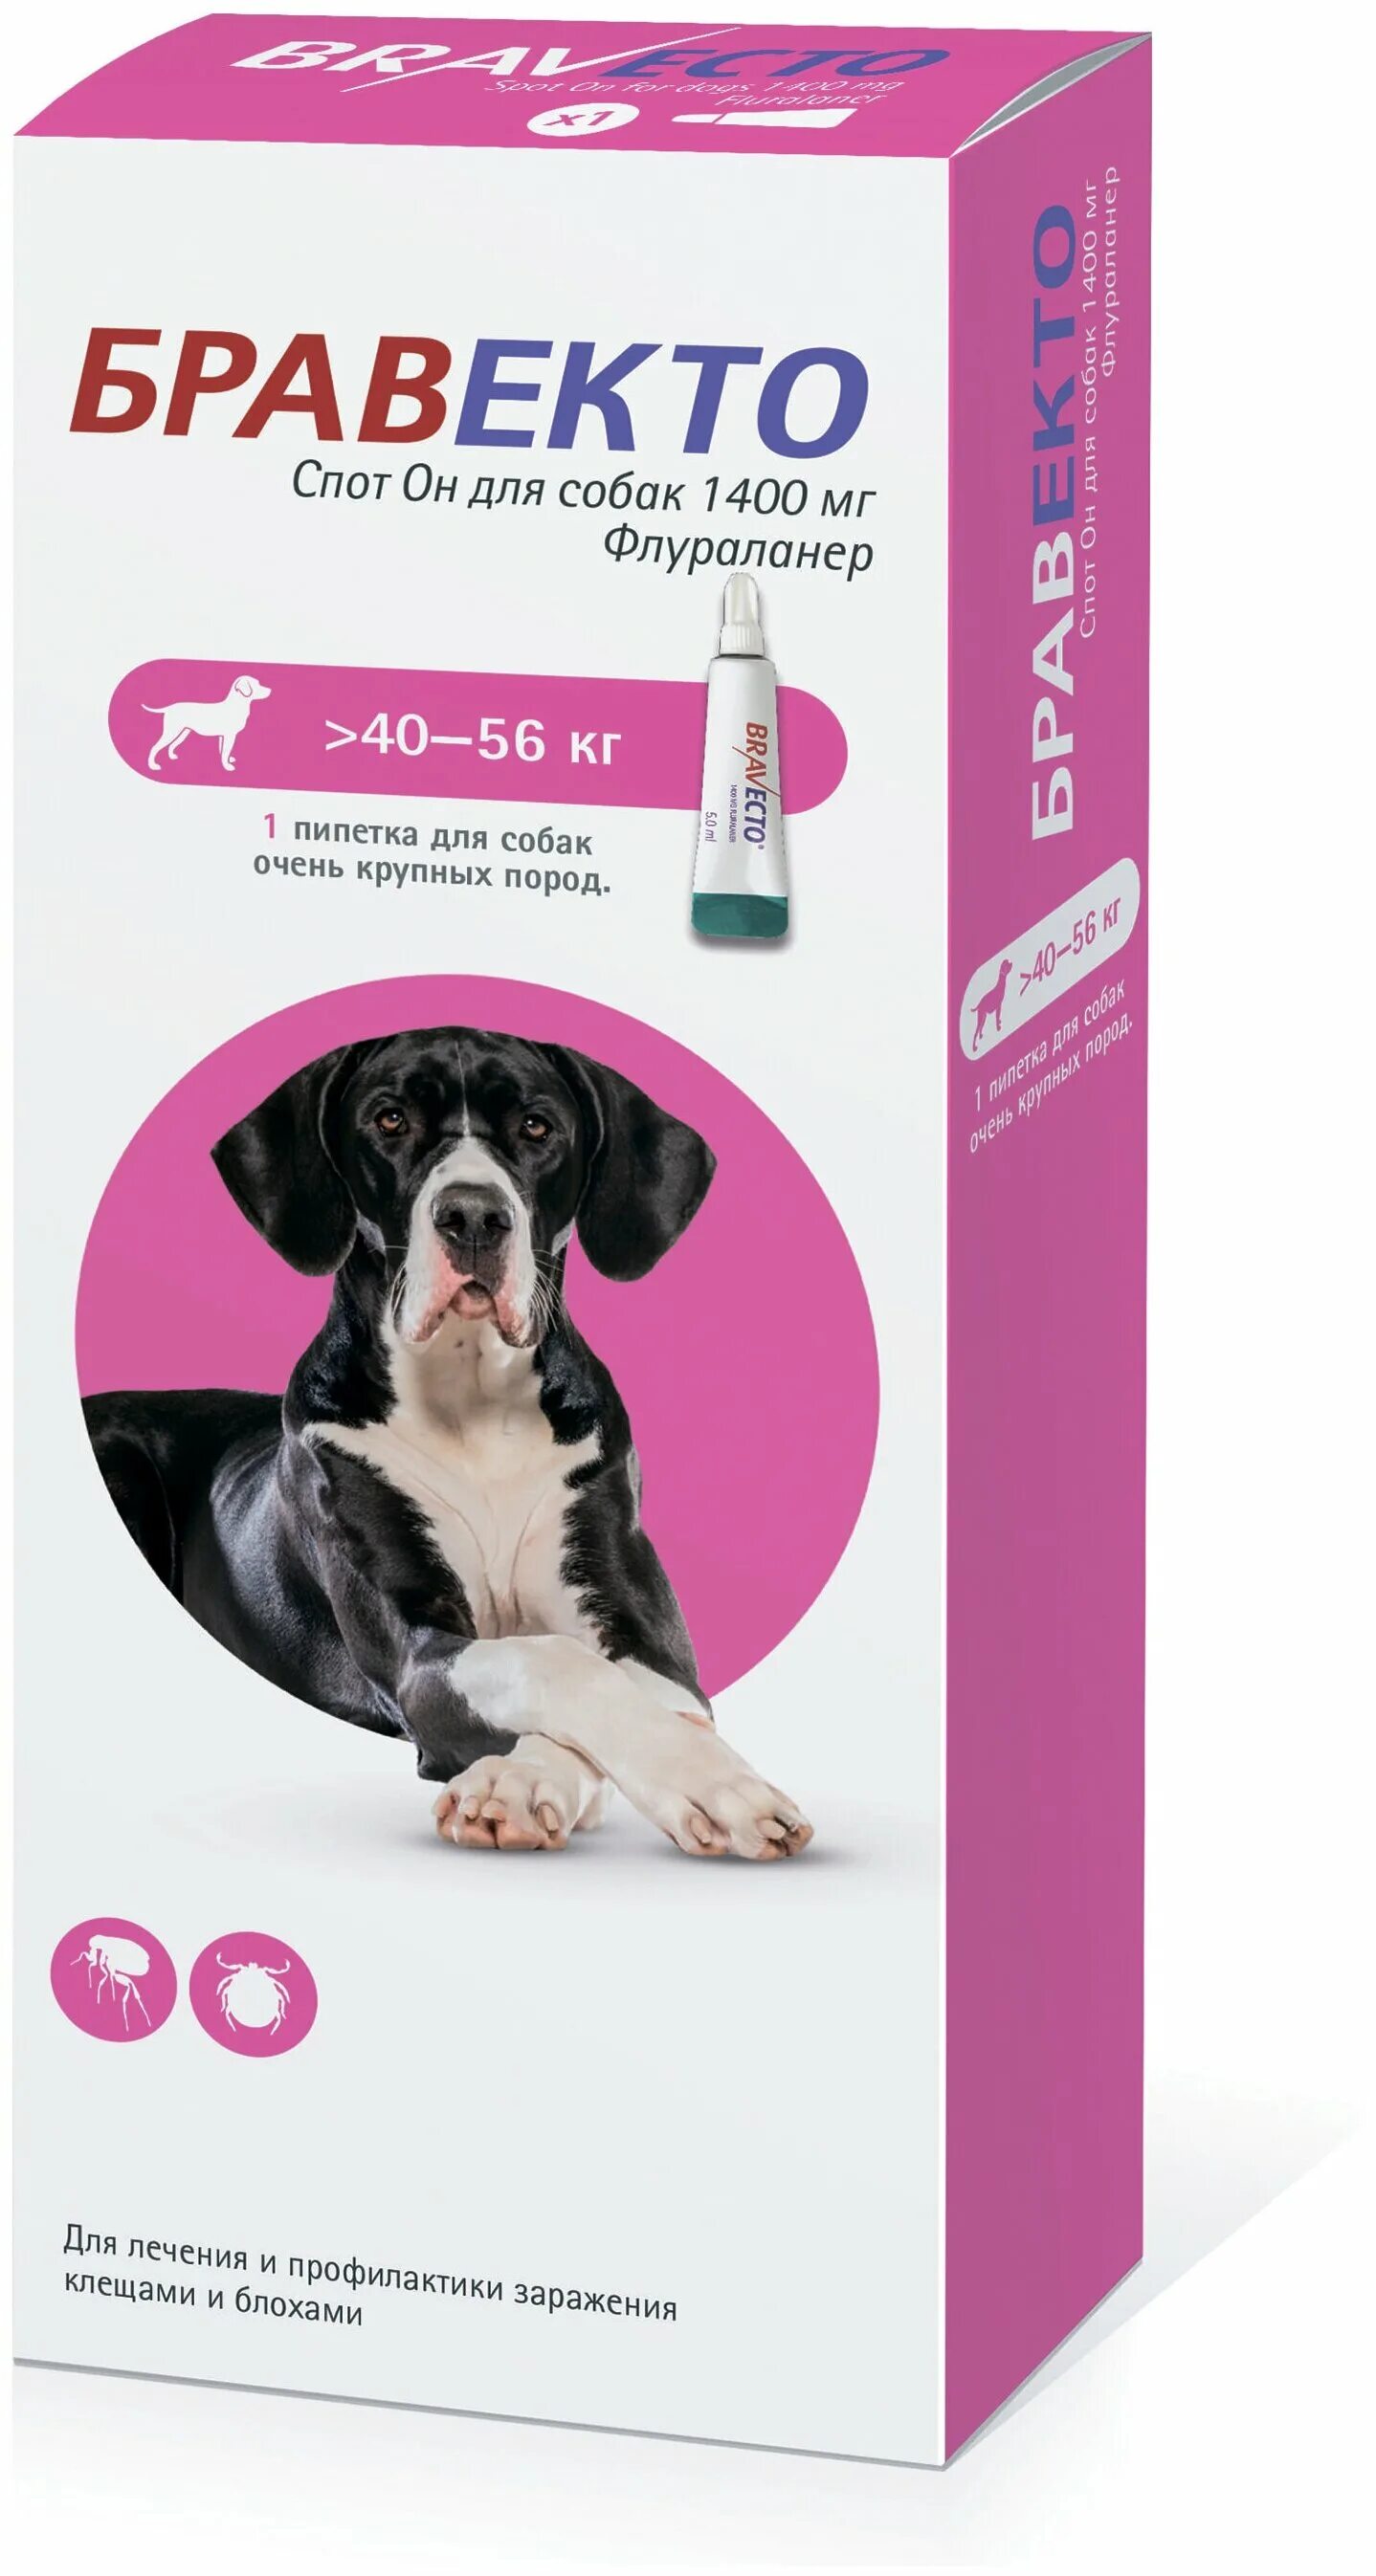 Бравекто для собак от чего. Бравекто спот он для собак (1400 мг) 40-56 кг. Бравекто (MSD animal Health) капли от блох и клещей спот он для собак 4,5-10 кг. Бравекто для собак 10-20 капли. Бравекто для собак 1400 мг 40-56.